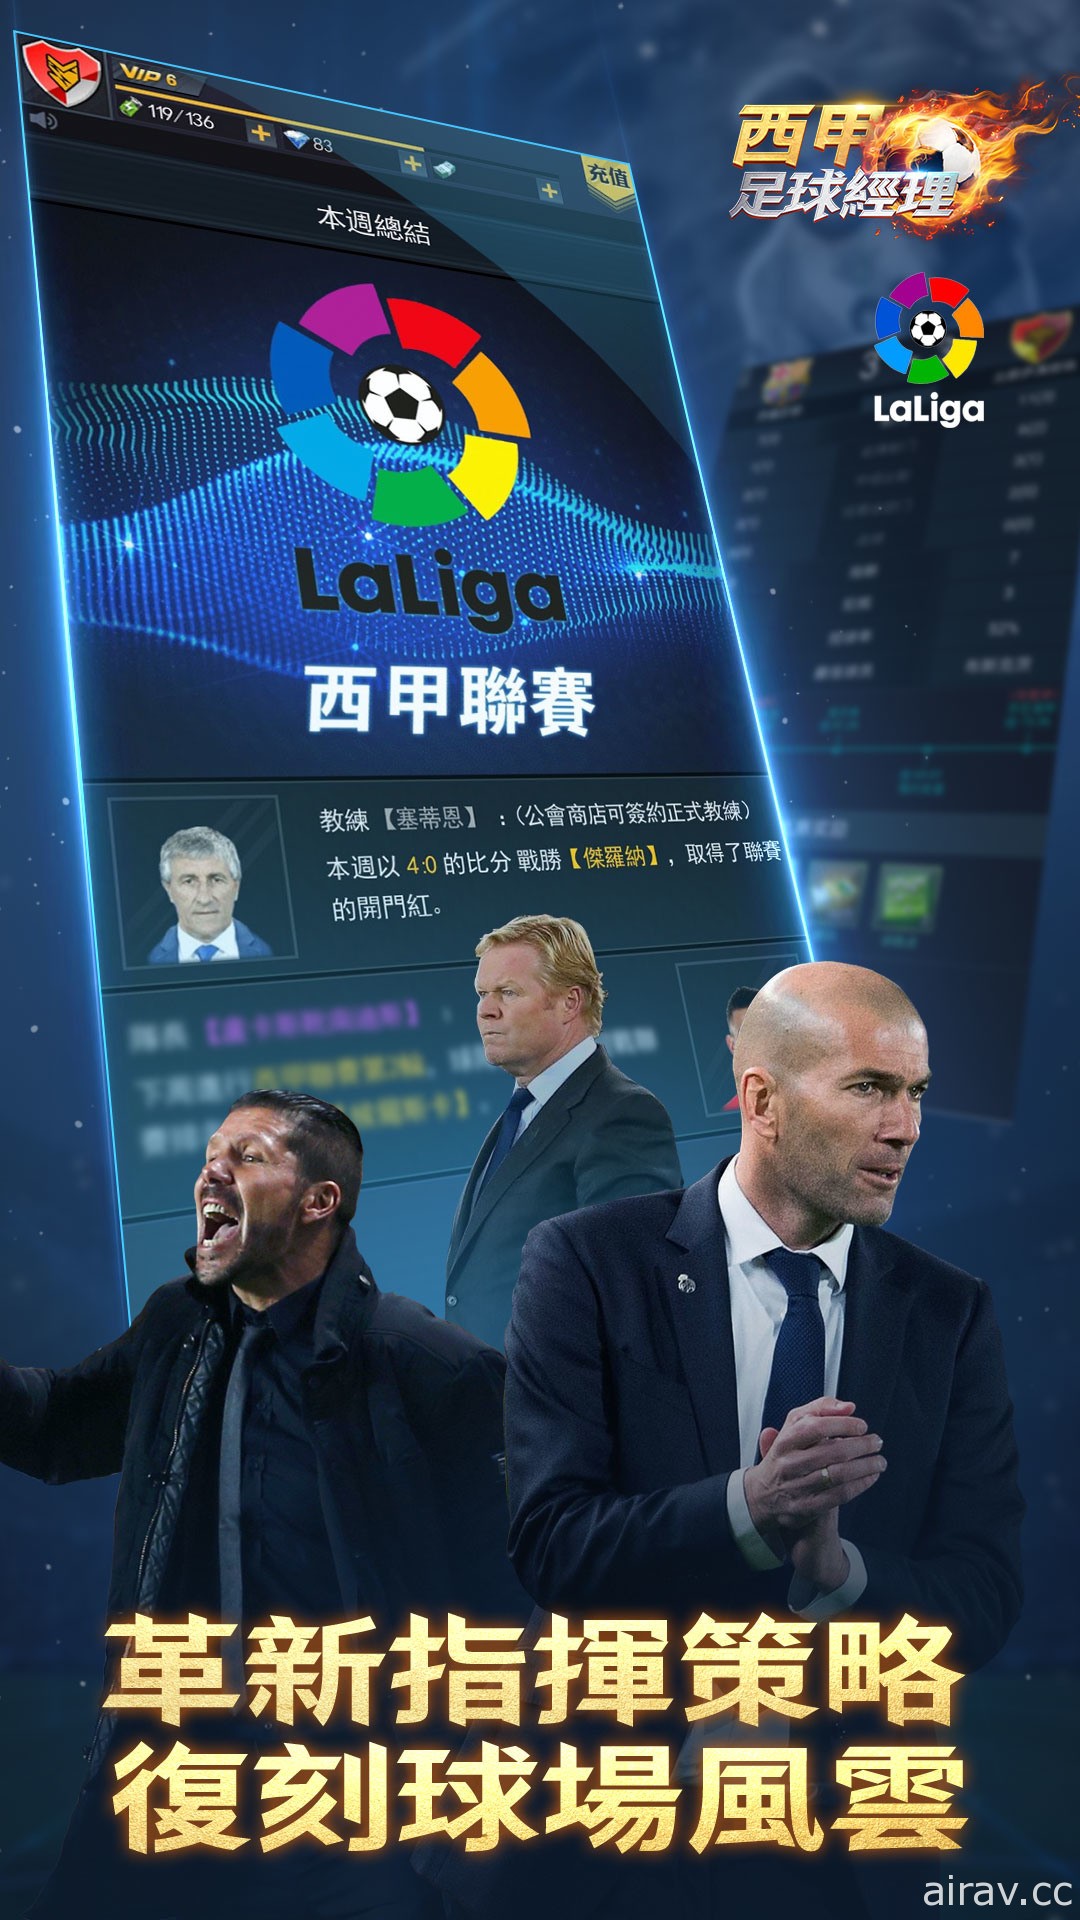 足球模擬經營遊戲《西甲足球經理》開放 Google Play 事前預約 預計 1 月 29 日上線